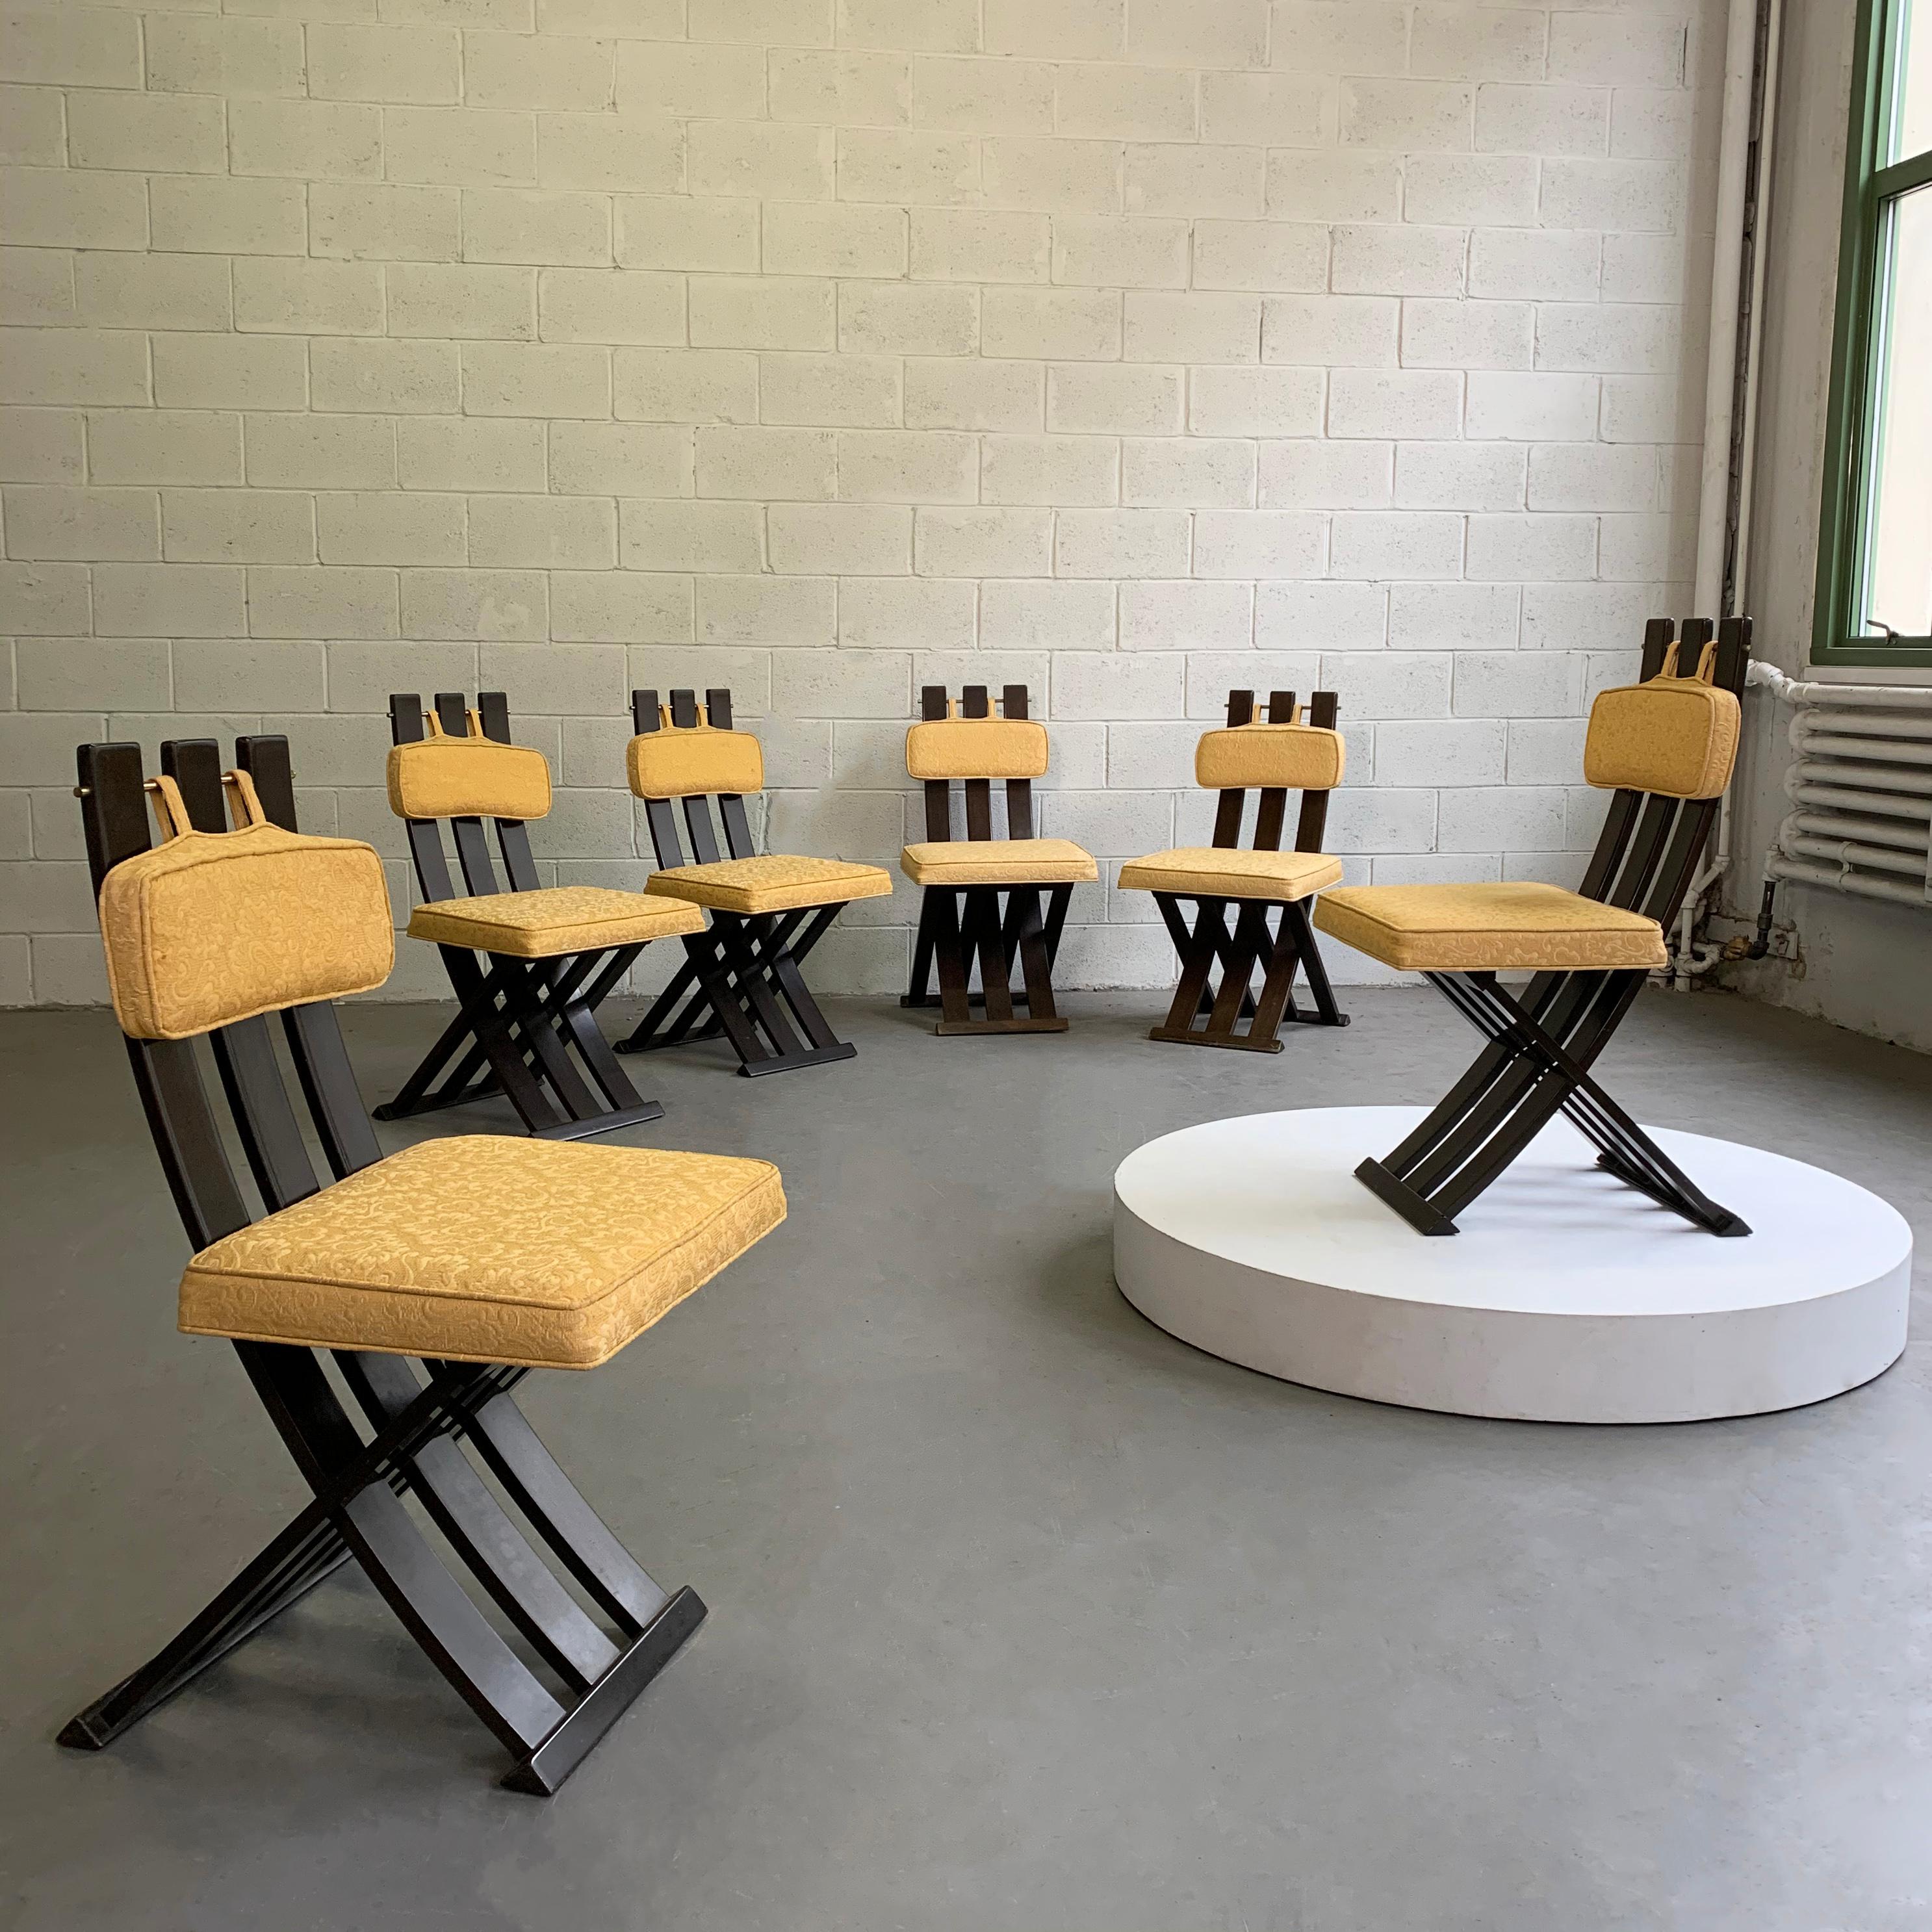 L'ensemble de six chaises de salle à manger de Harvey Probber, de style moderne du milieu du siècle, présente des bases en X entrecroisées en acajou laqué noir qui sont fantastiques sous tous les angles. Les coussins sont amovibles. Nous les